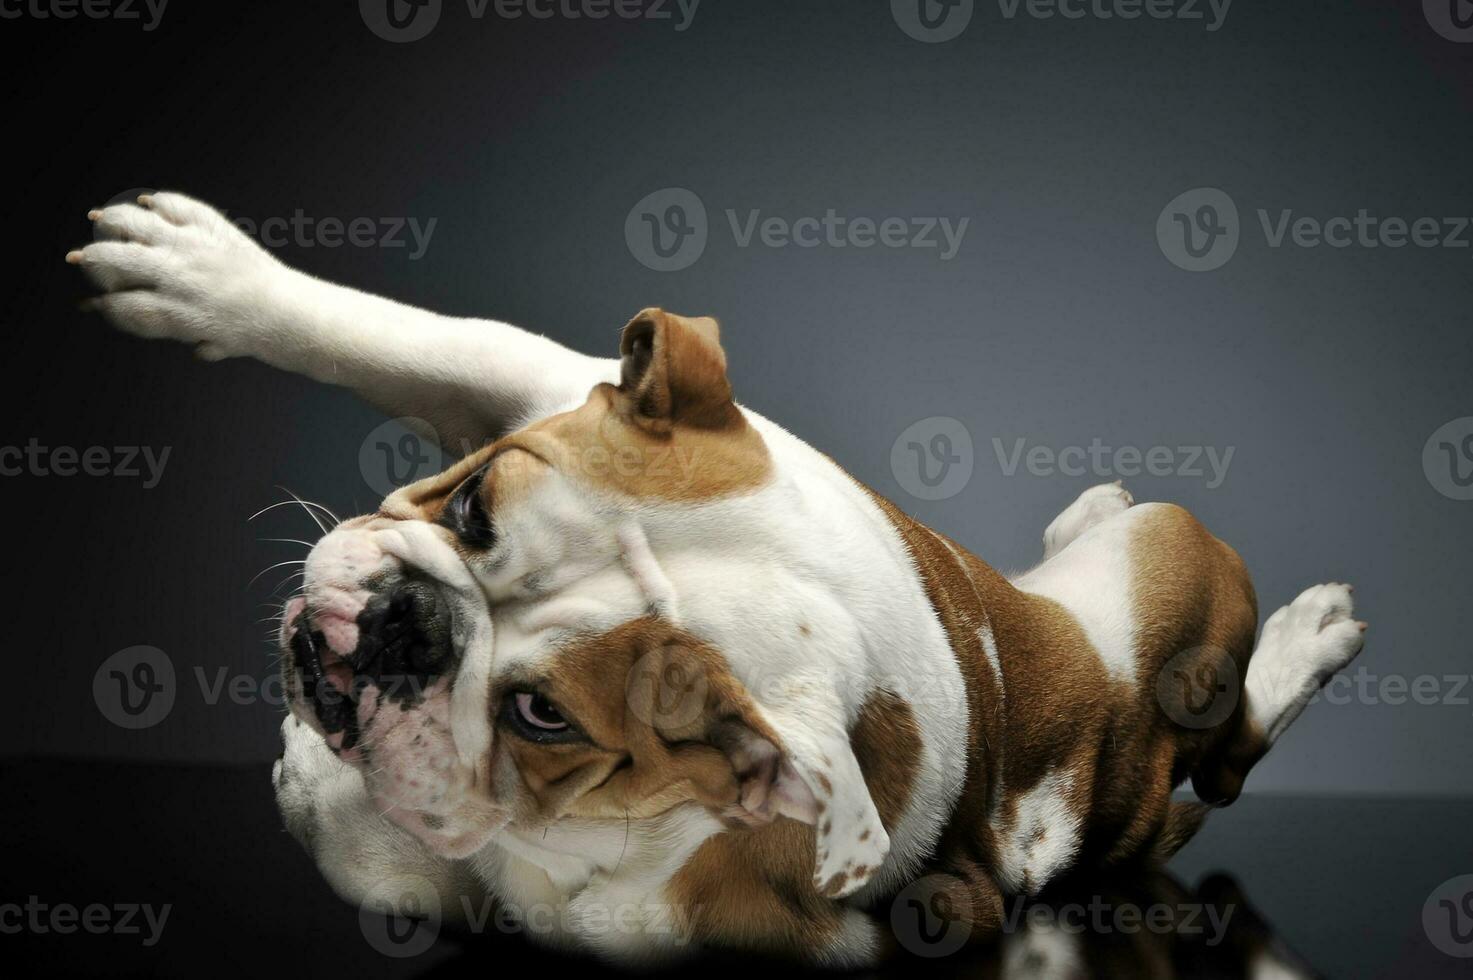 English Bulldoghaving fun in a gray photo studio